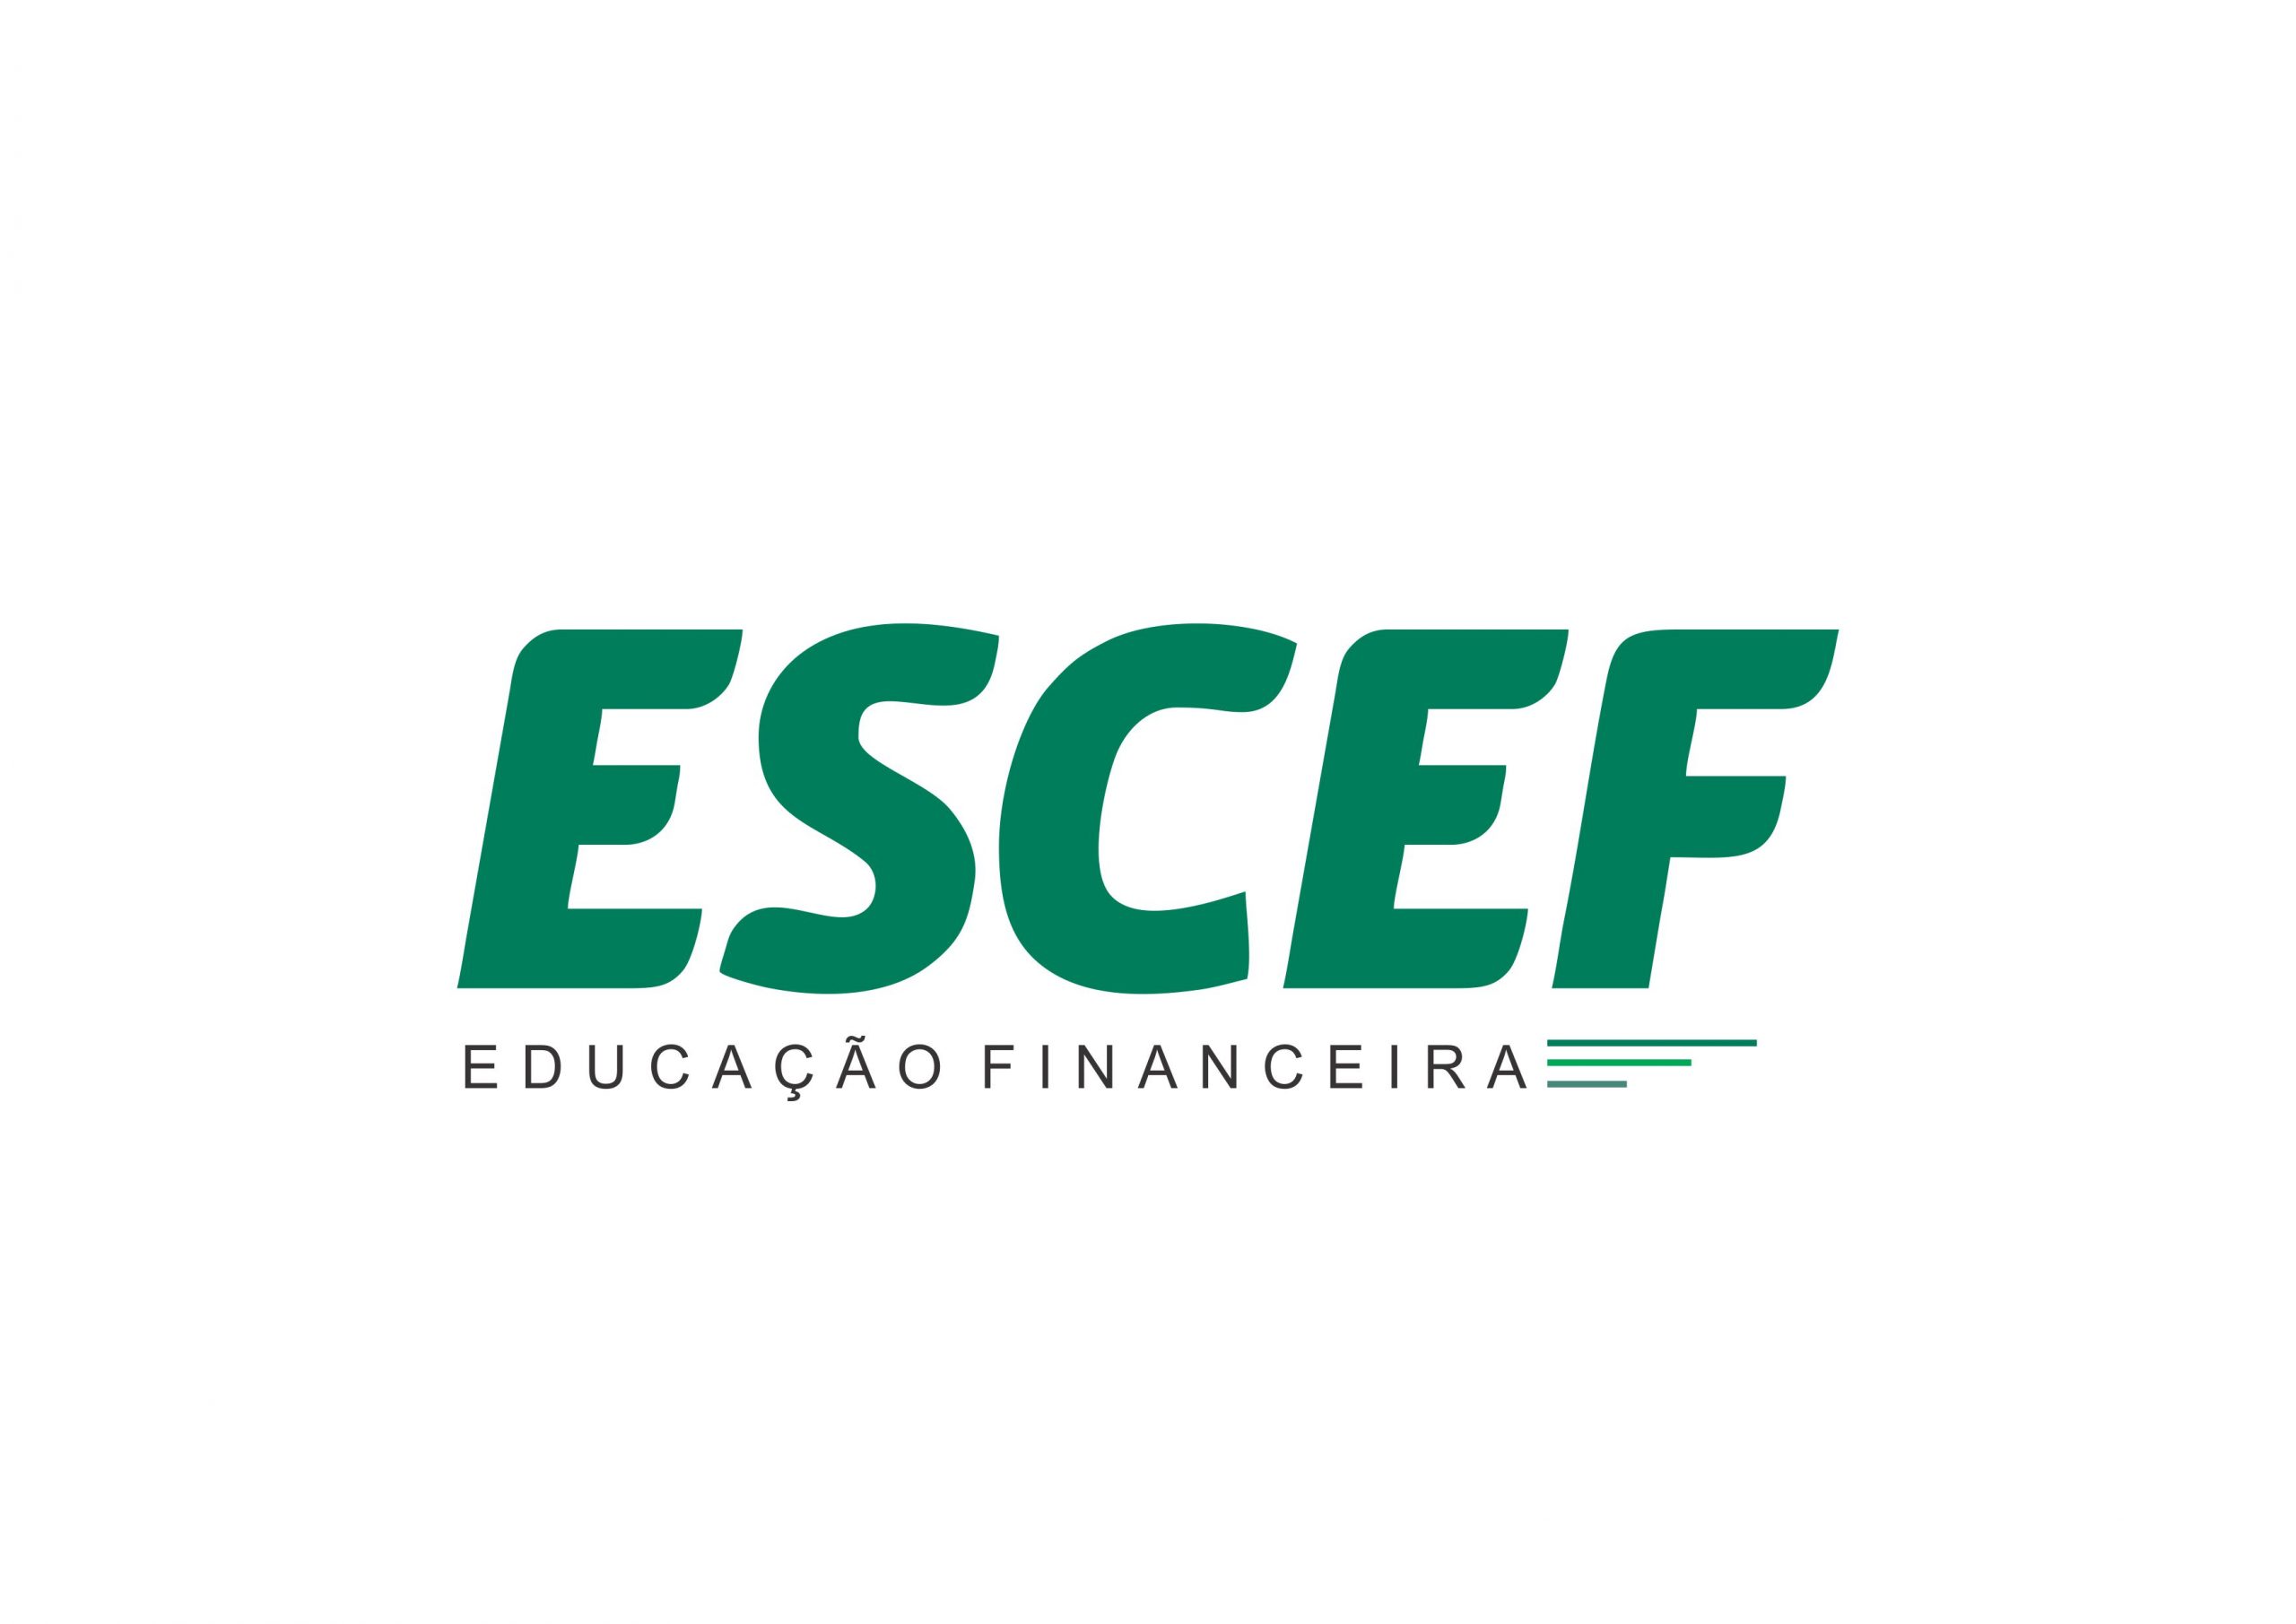 “A Educação Financeira é uma das áreas do conhecimento mais importantes na atualidade!”